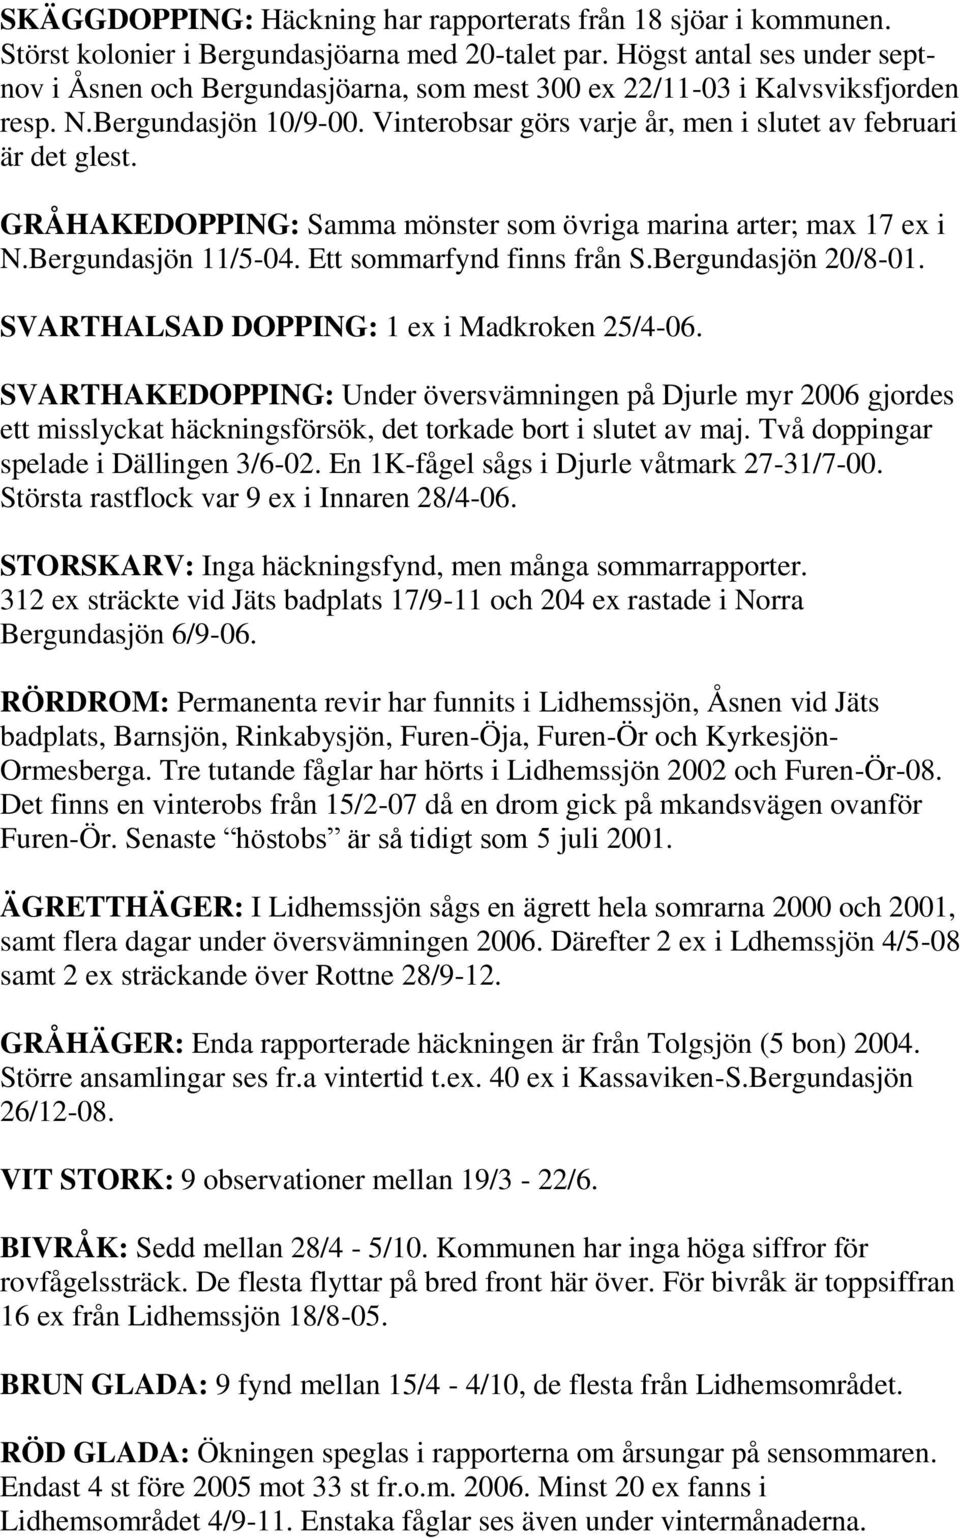 GRÅHAKEDOPPING: Samma mönster som övriga marina arter; max 17 ex i N.Bergundasjön 11/5-04. Ett sommarfynd finns från S.Bergundasjön 20/8-01. SVARTHALSAD DOPPING: 1 ex i Madkroken 25/4-06.